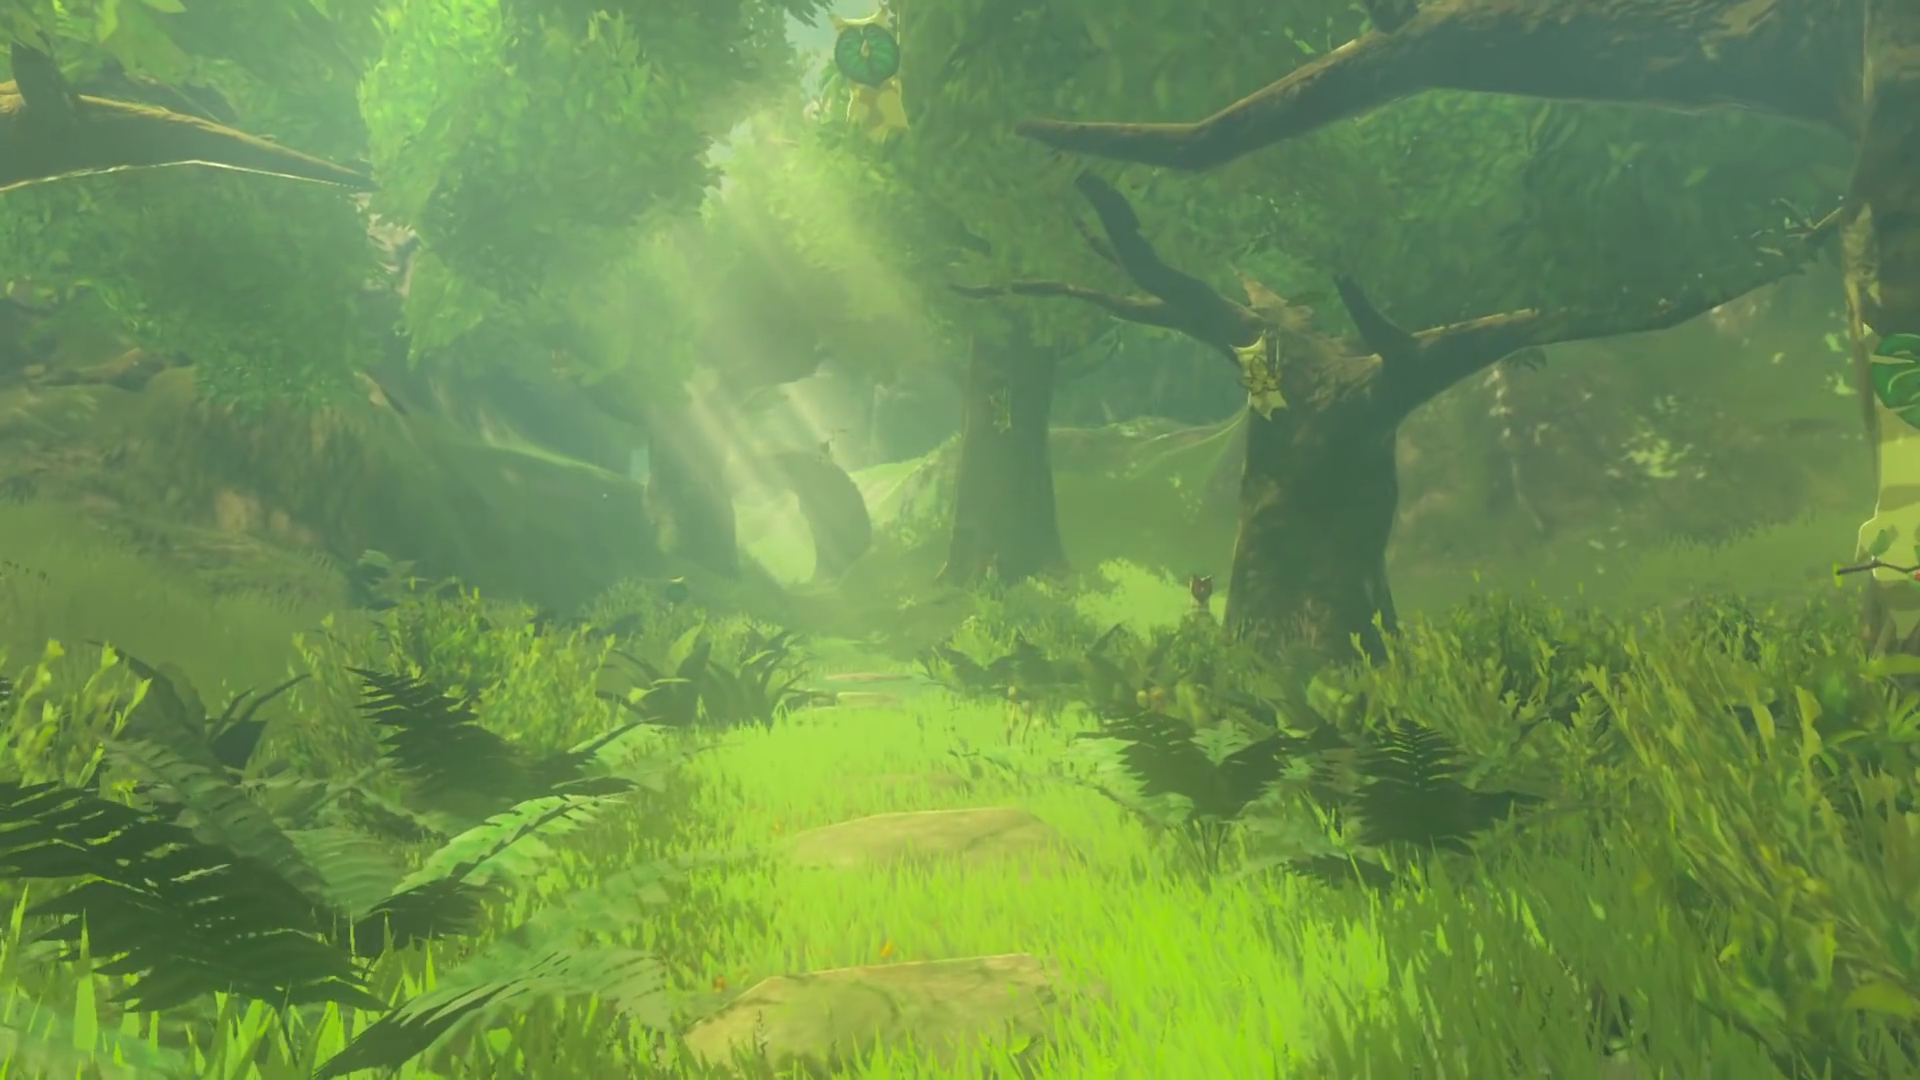 Korok Forest Zeldapedia Fandom